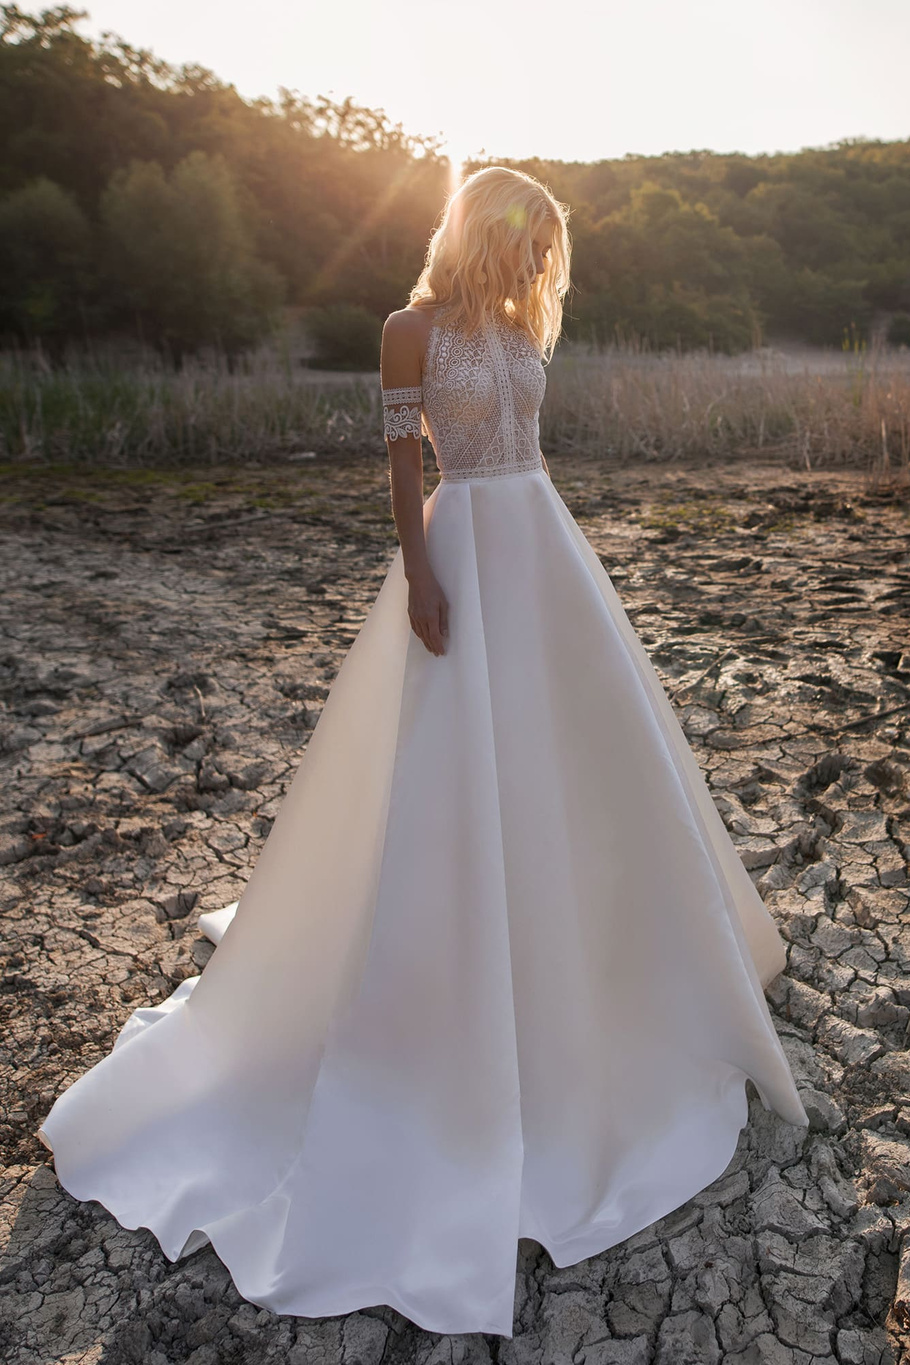 Купить свадебное платье «Руби» Анна Кузнецова из коллекции 2020 года в салоне «Мэри Трюфель»